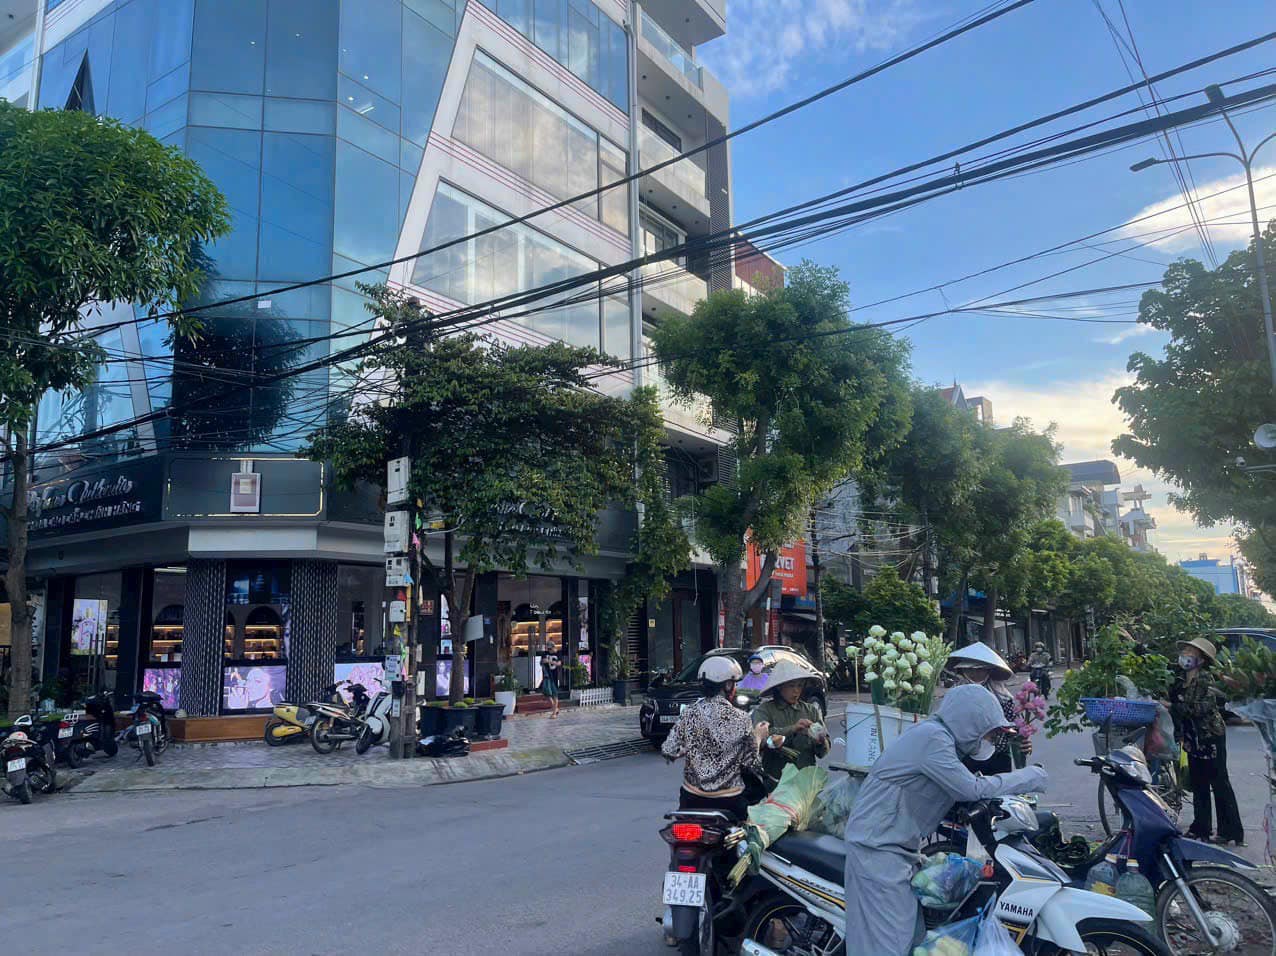 Bán nhà 2 tầng mặt đường đôi Nguyễn Văn Linh, ph Tân Bình, TP HD, 60.1m2, mt 4.57m, KD buôn bán tốt - Ảnh 2